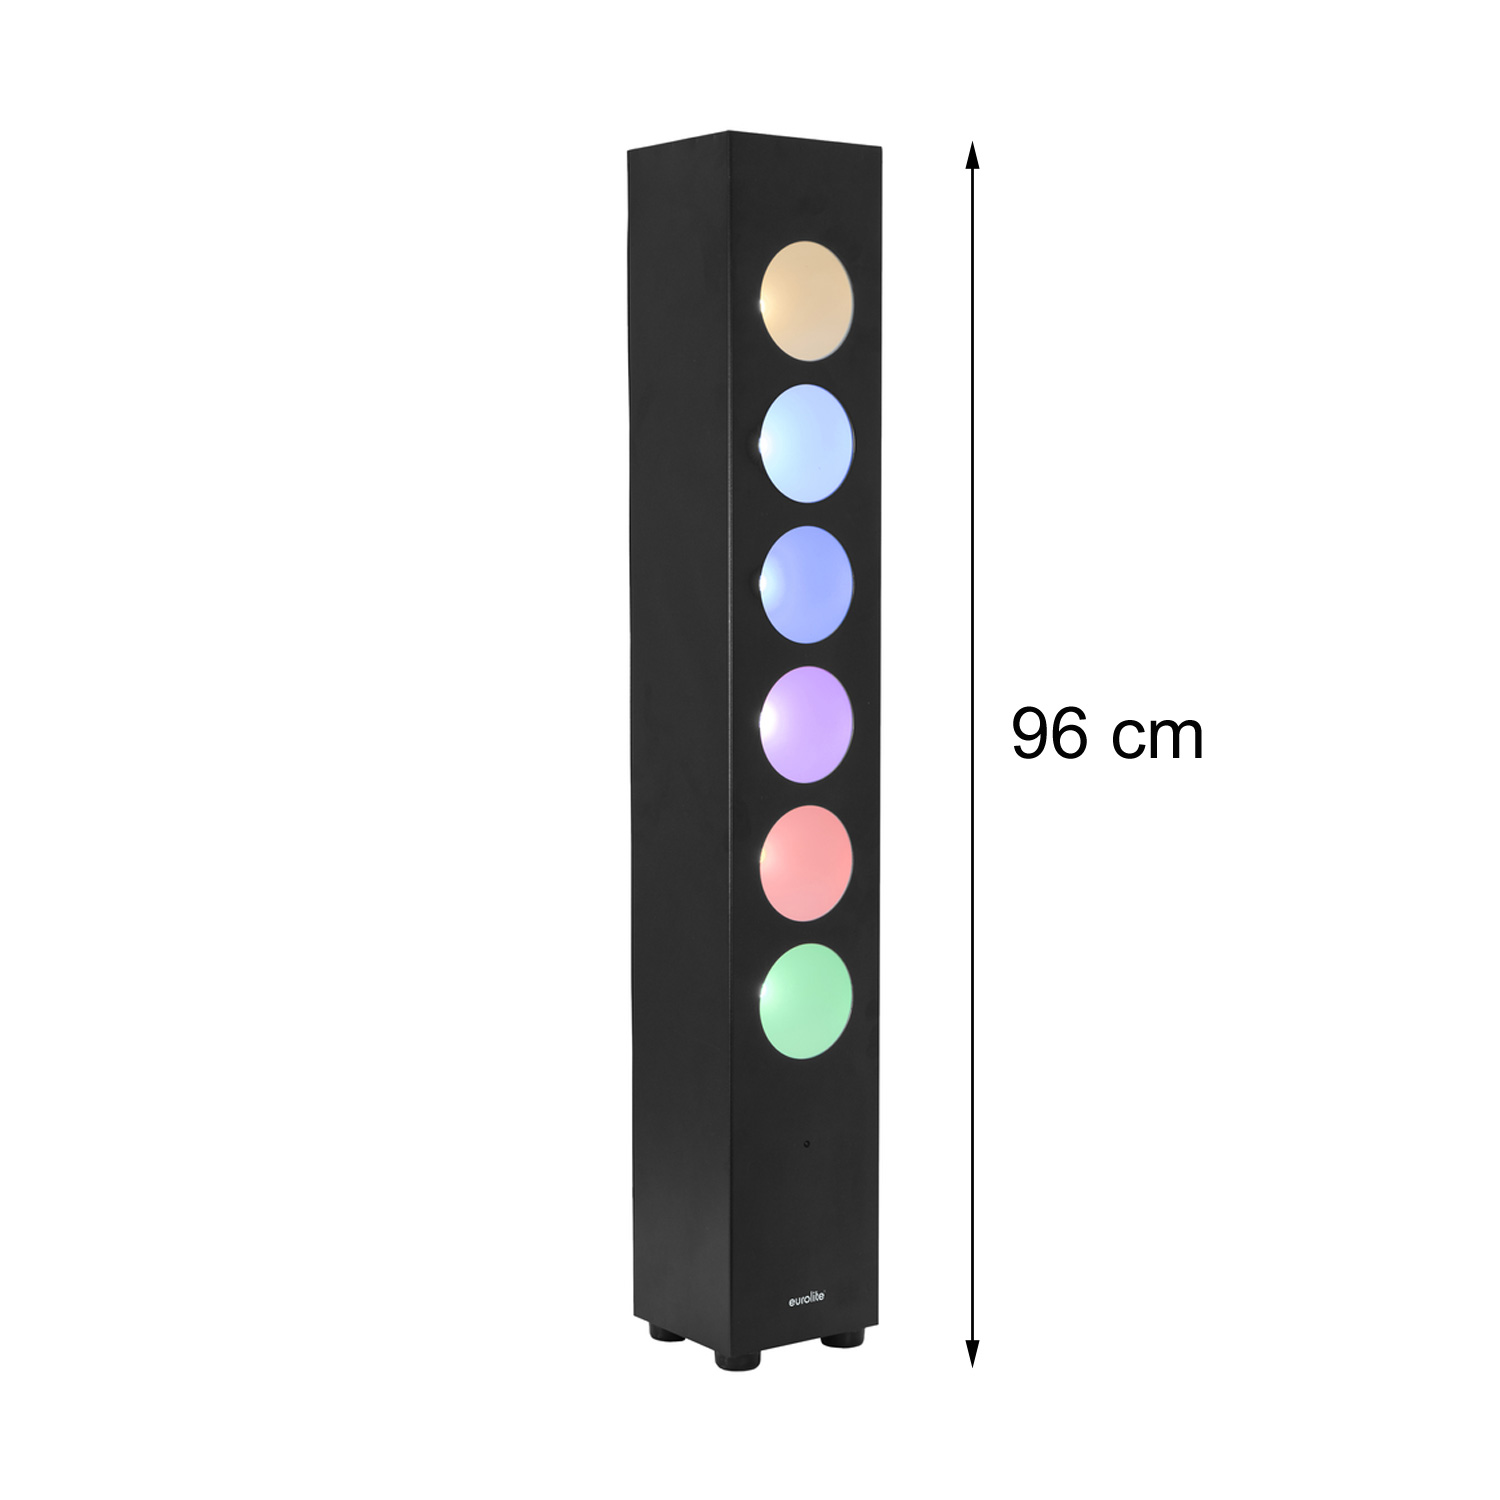 LED Lichtsäule Lichtorgel - high Power 6x 30W COB - DMX - inkl. Fernbedienung - Partyraumbeleuchtung